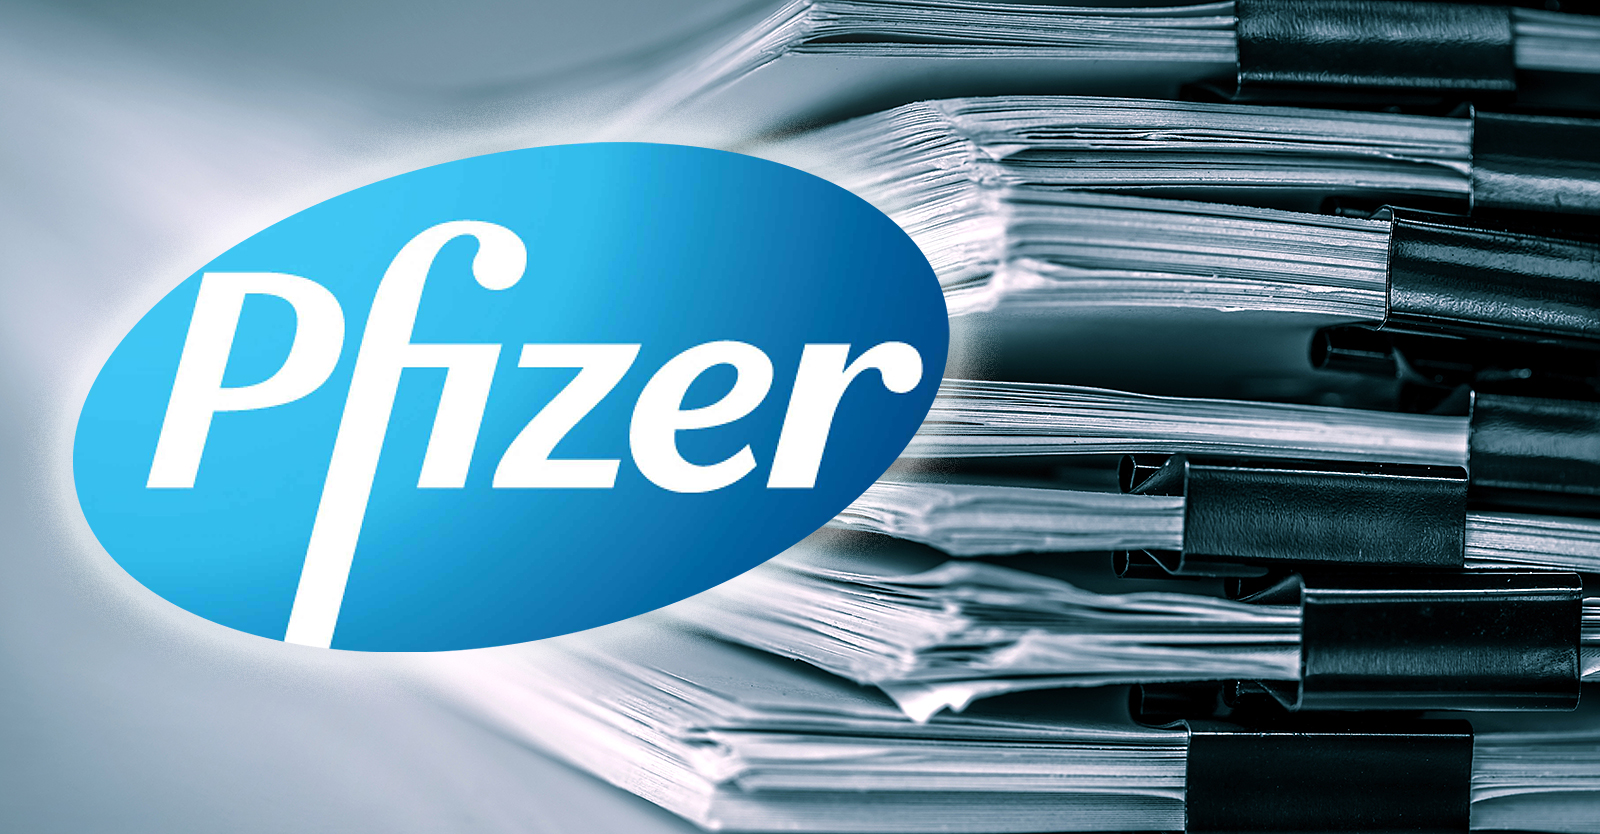 I documenti rivelano che Pfizer ha assunto oltre 600 persone per elaborare i rapporti sui danni da vaccino